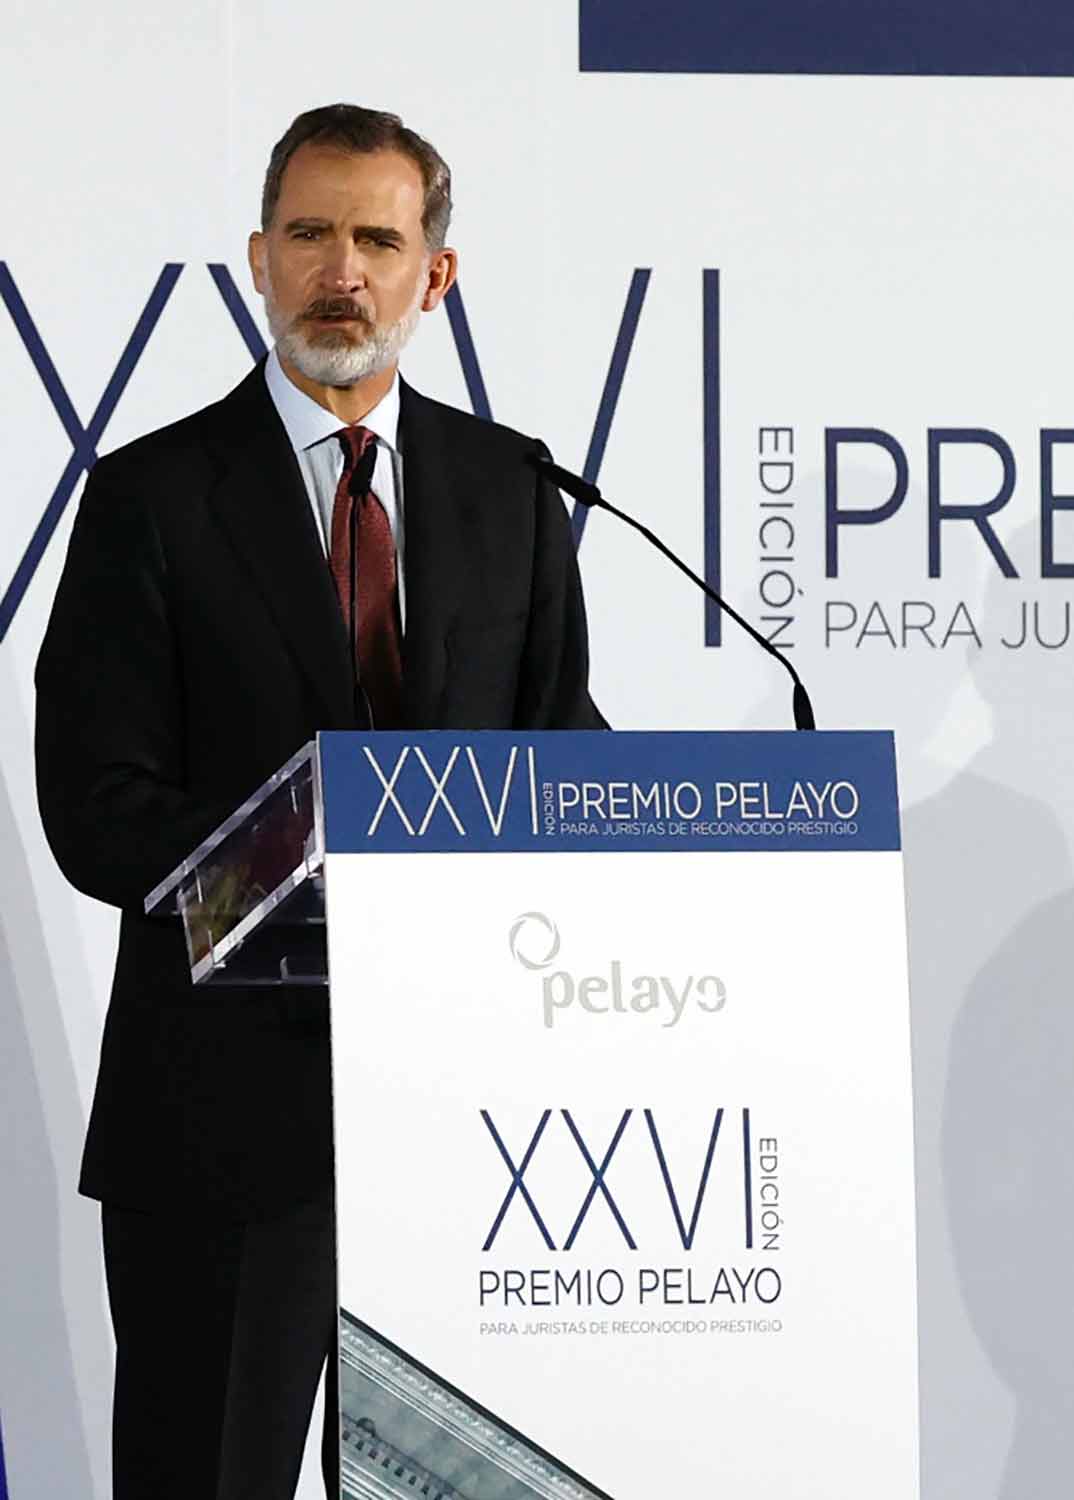 Rey Felipe VI © Casa S.M. El Rey